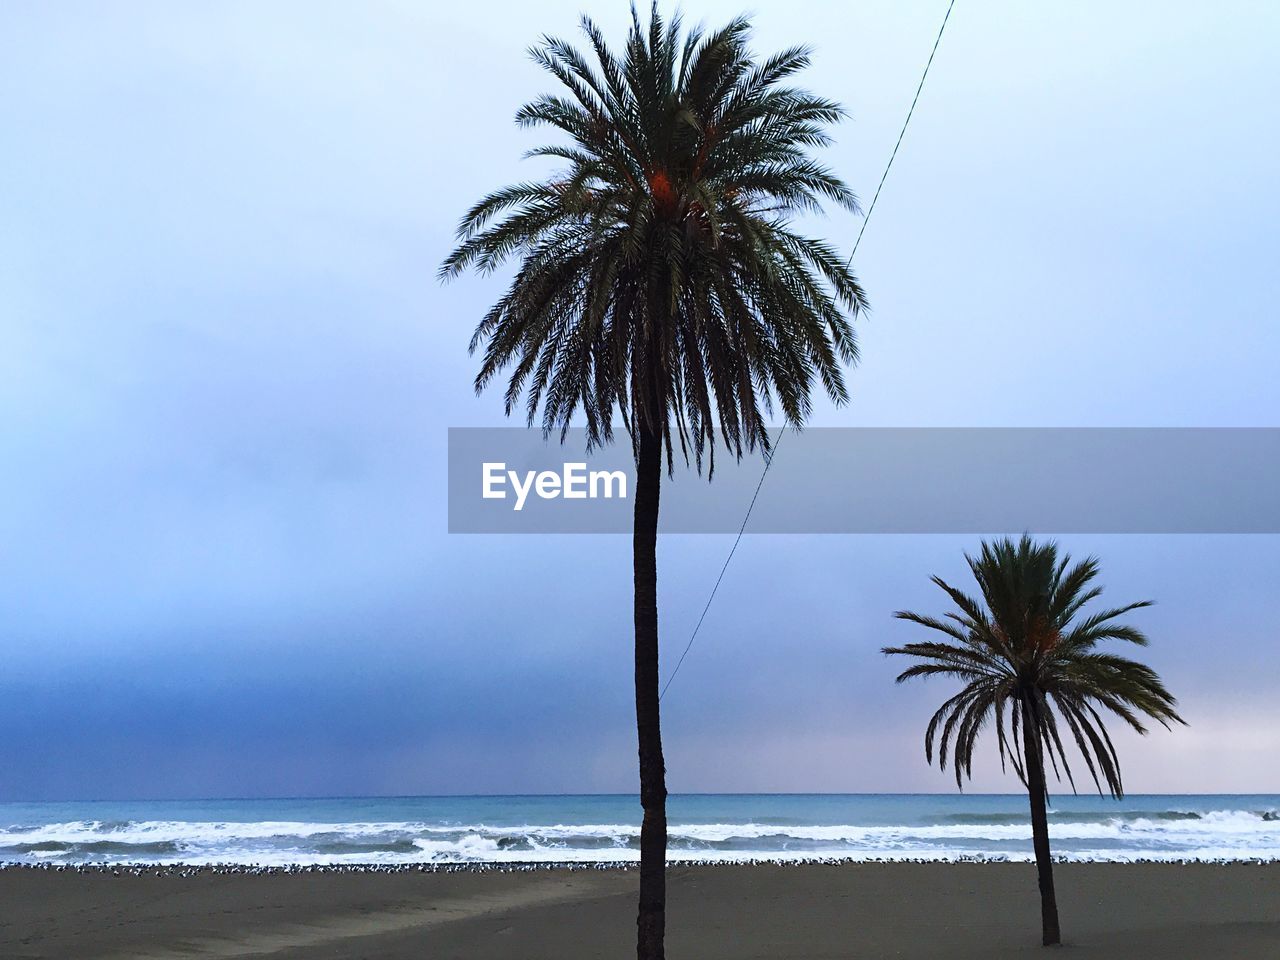 Palm trees on beach against clear sky